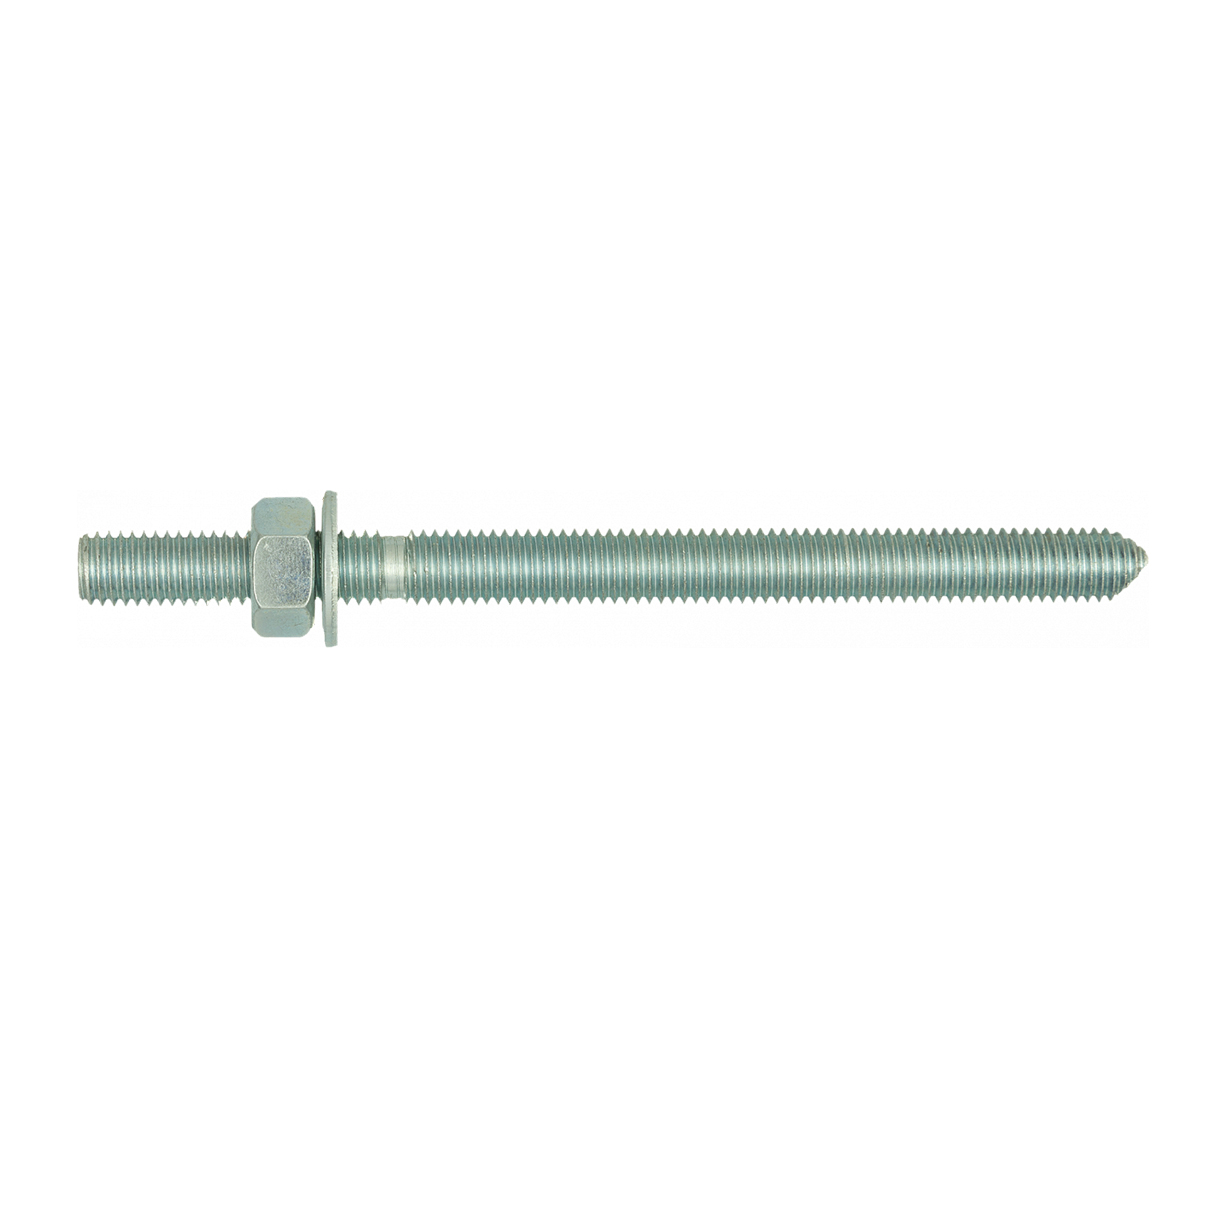 R-STUDS Metric Threaded Rods — Steel Class 8.8, Zinc Flake, Flat Head